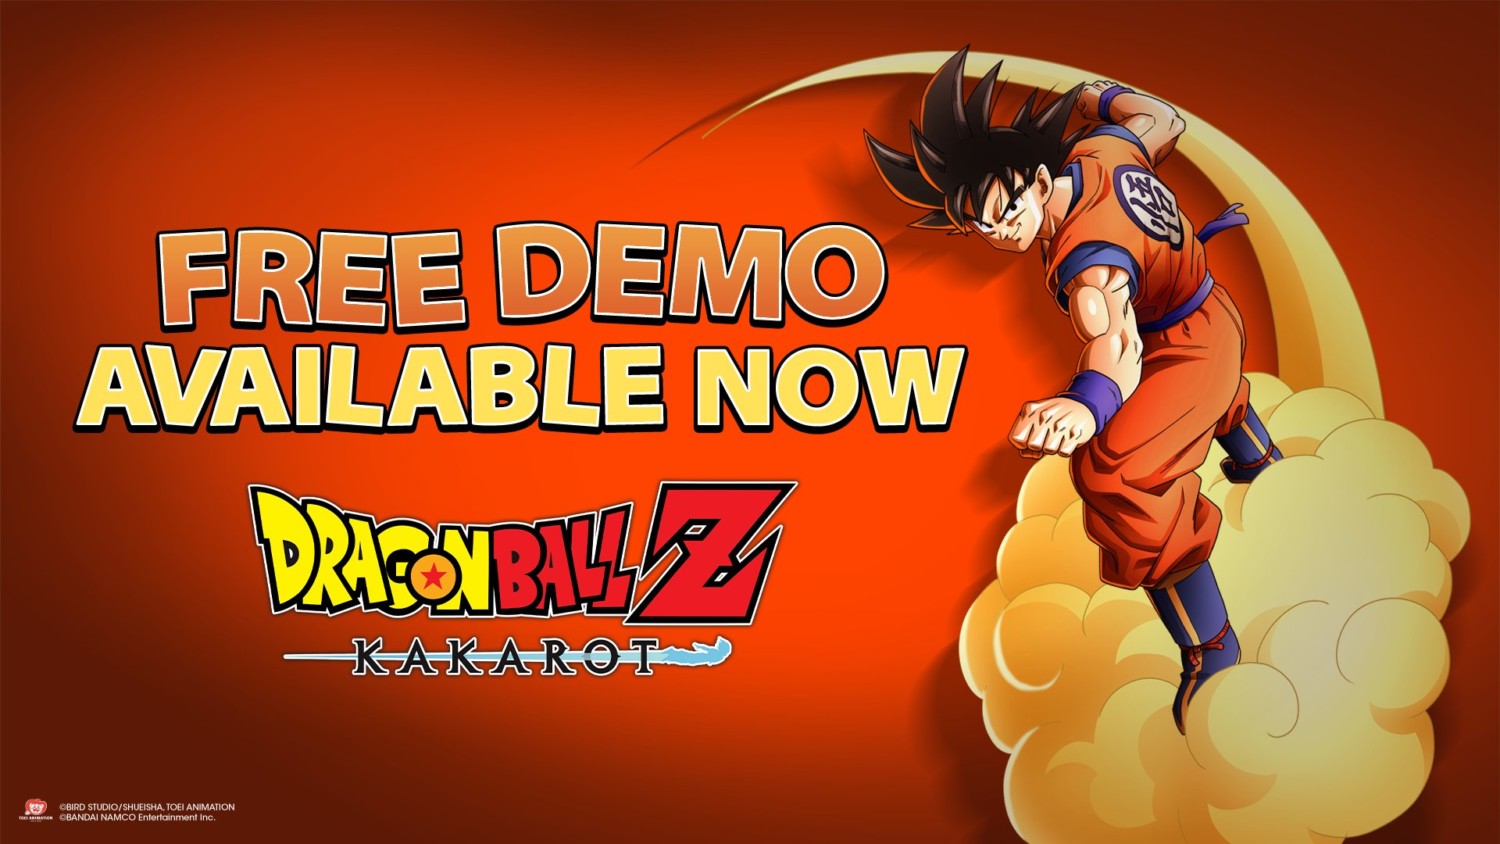 Get DRAGON BALL Z: KAKAROT Demo Version - Microsoft Store en-SA